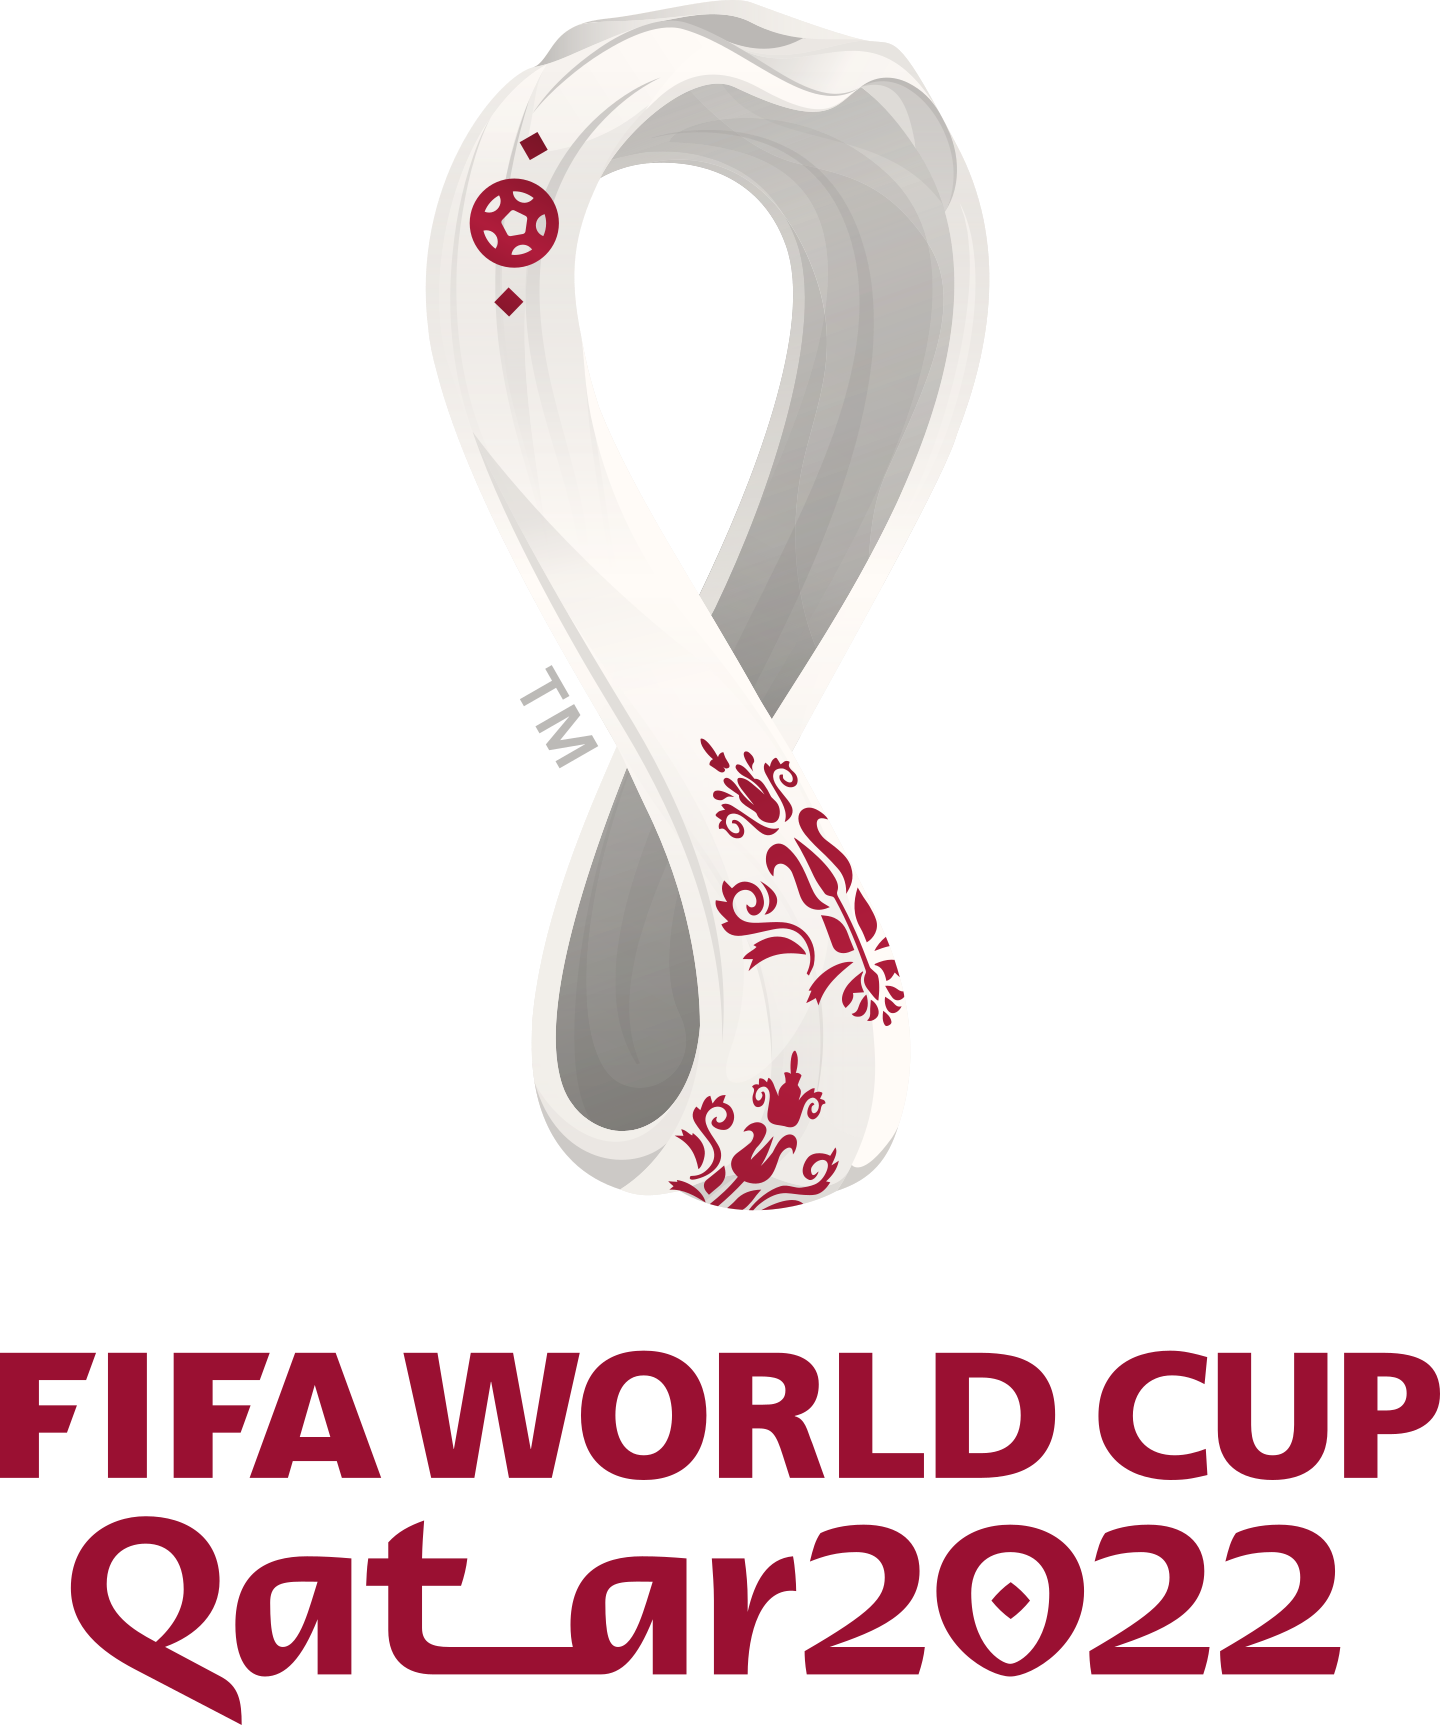 world cup 2022 logo 2 - Copa Mundial de Fútbol Catar 2022 Logo